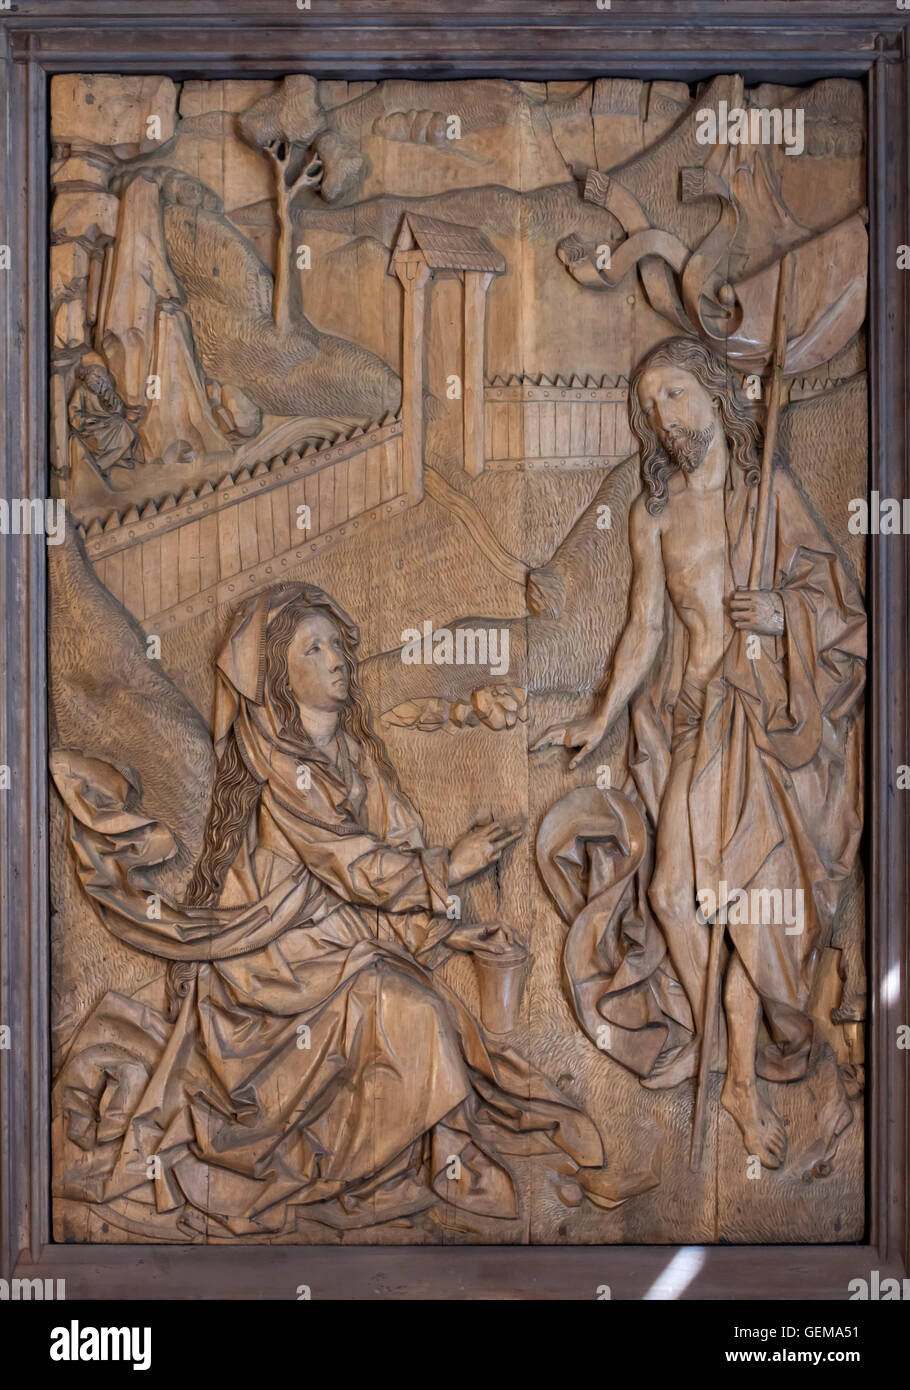 Der auferstandene Christus erscheint Mary Magdalene. Hölzernes Schnitzen von 1490-1492 vom deutschen Bildhauer Tilman Riemenschneider angezeigt im Bode-Museum in Berlin, Deutschland. Stockfoto